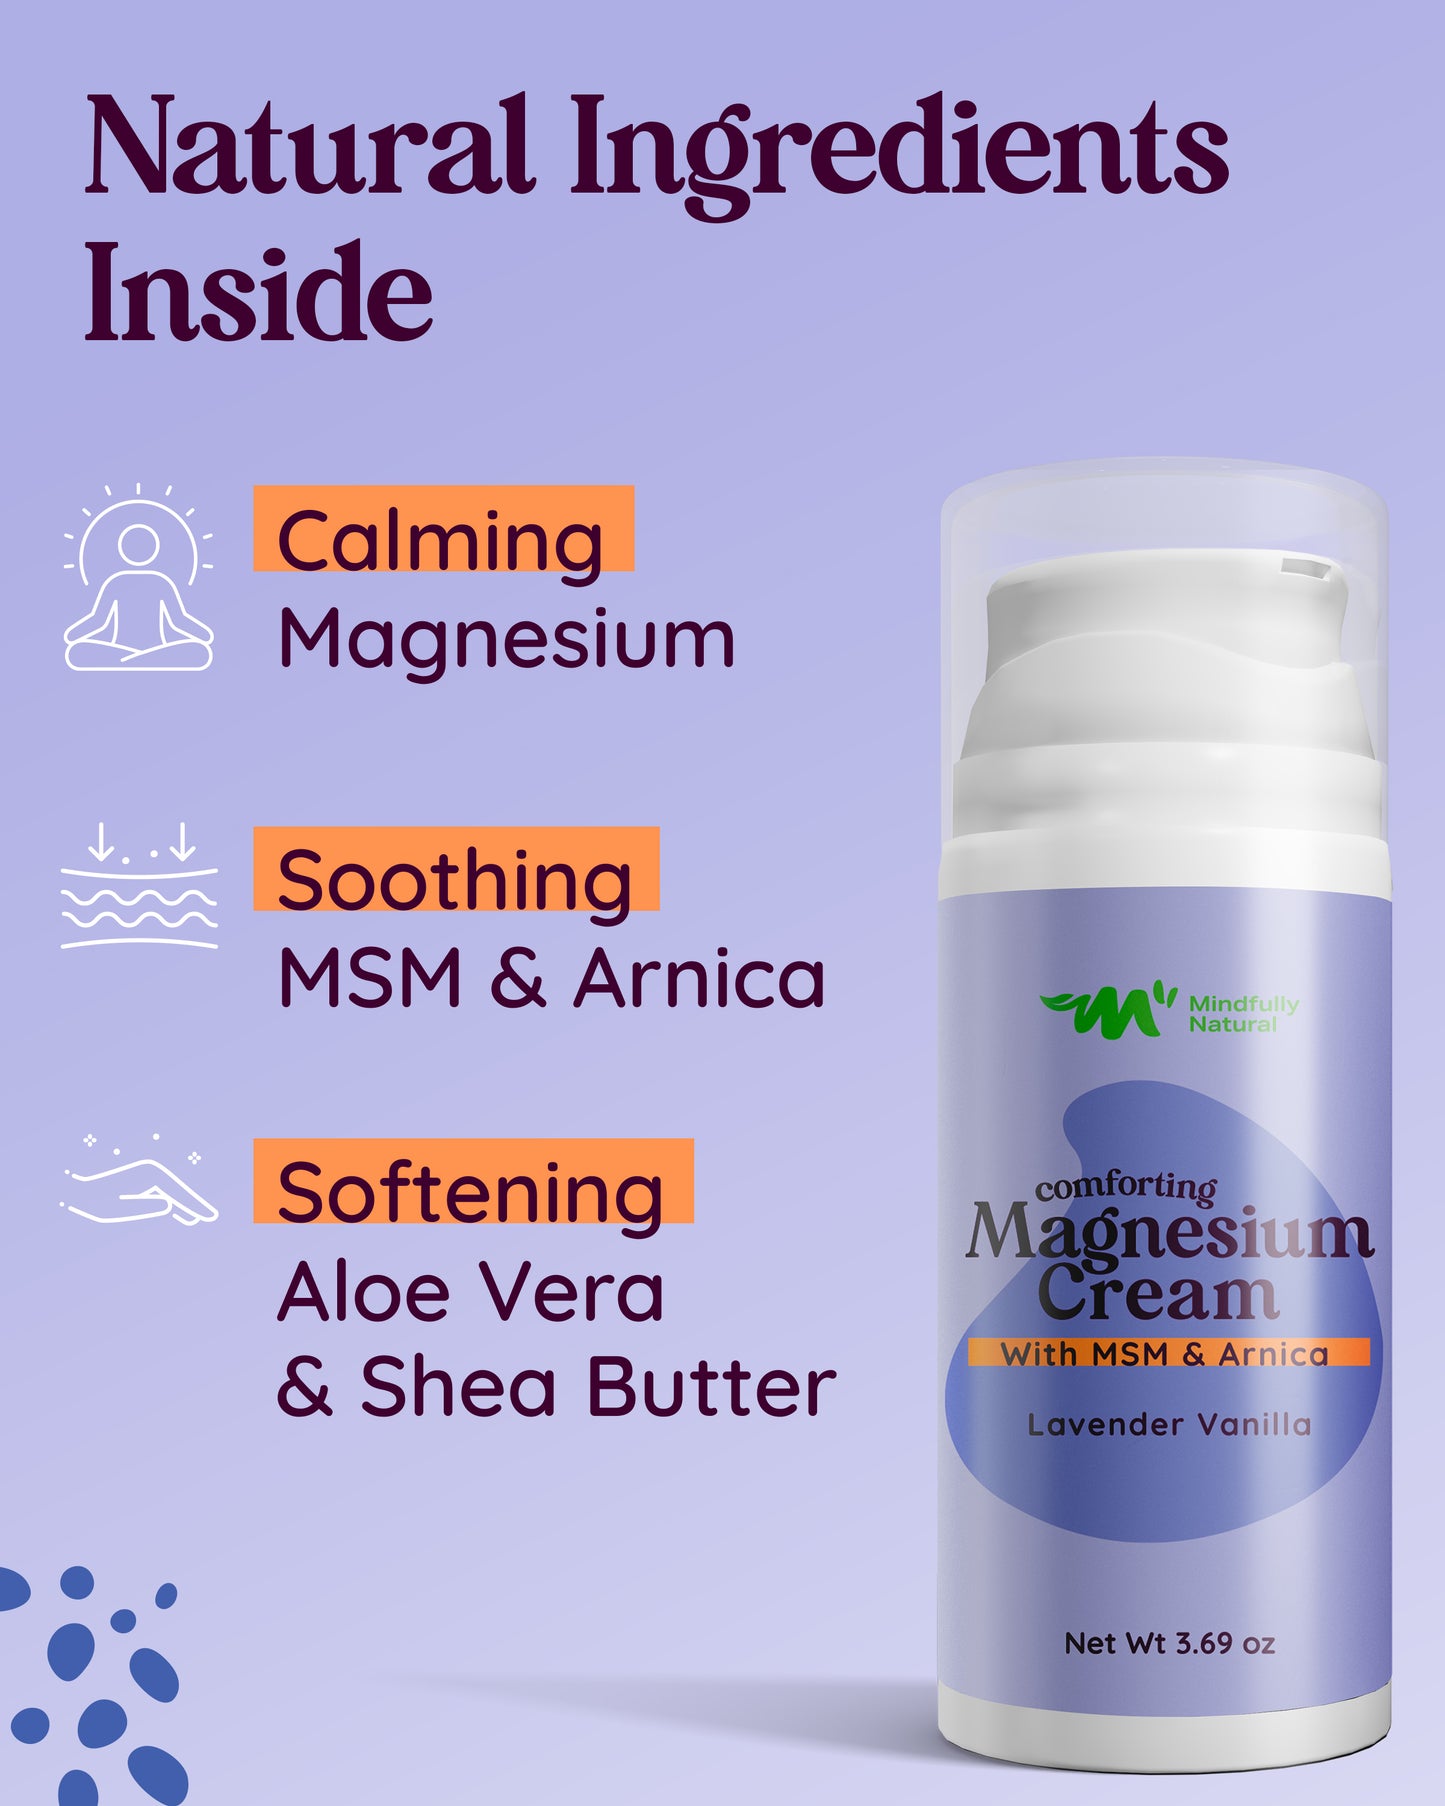 Magnesium Cream Lavender Vanilla